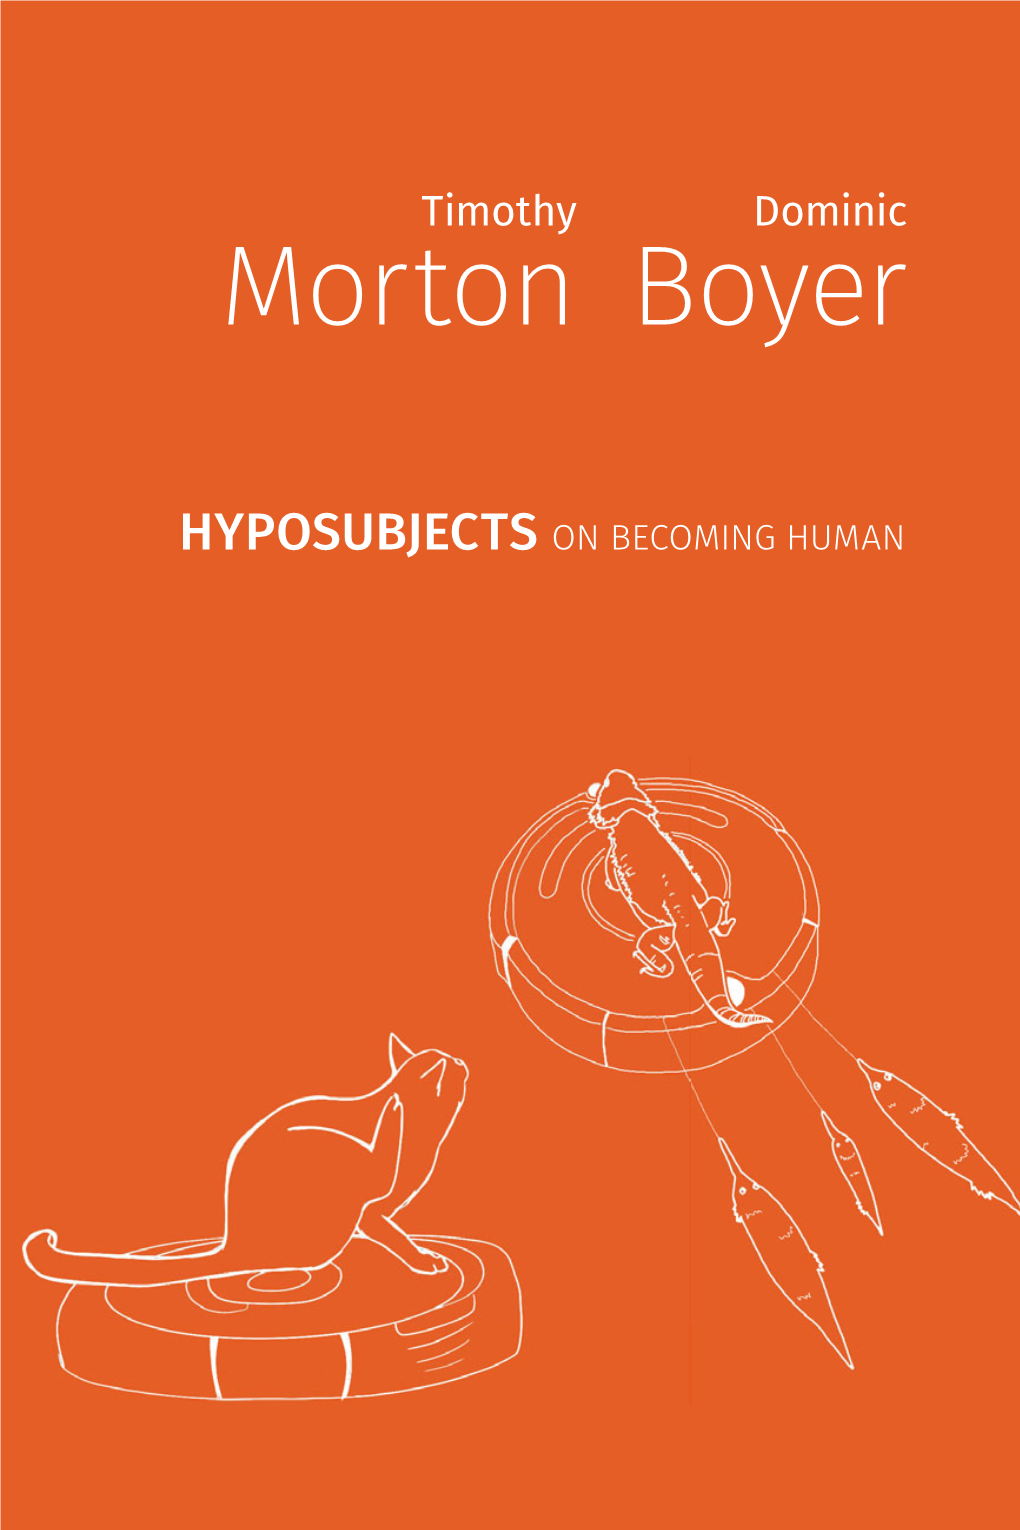 Morton Boyer